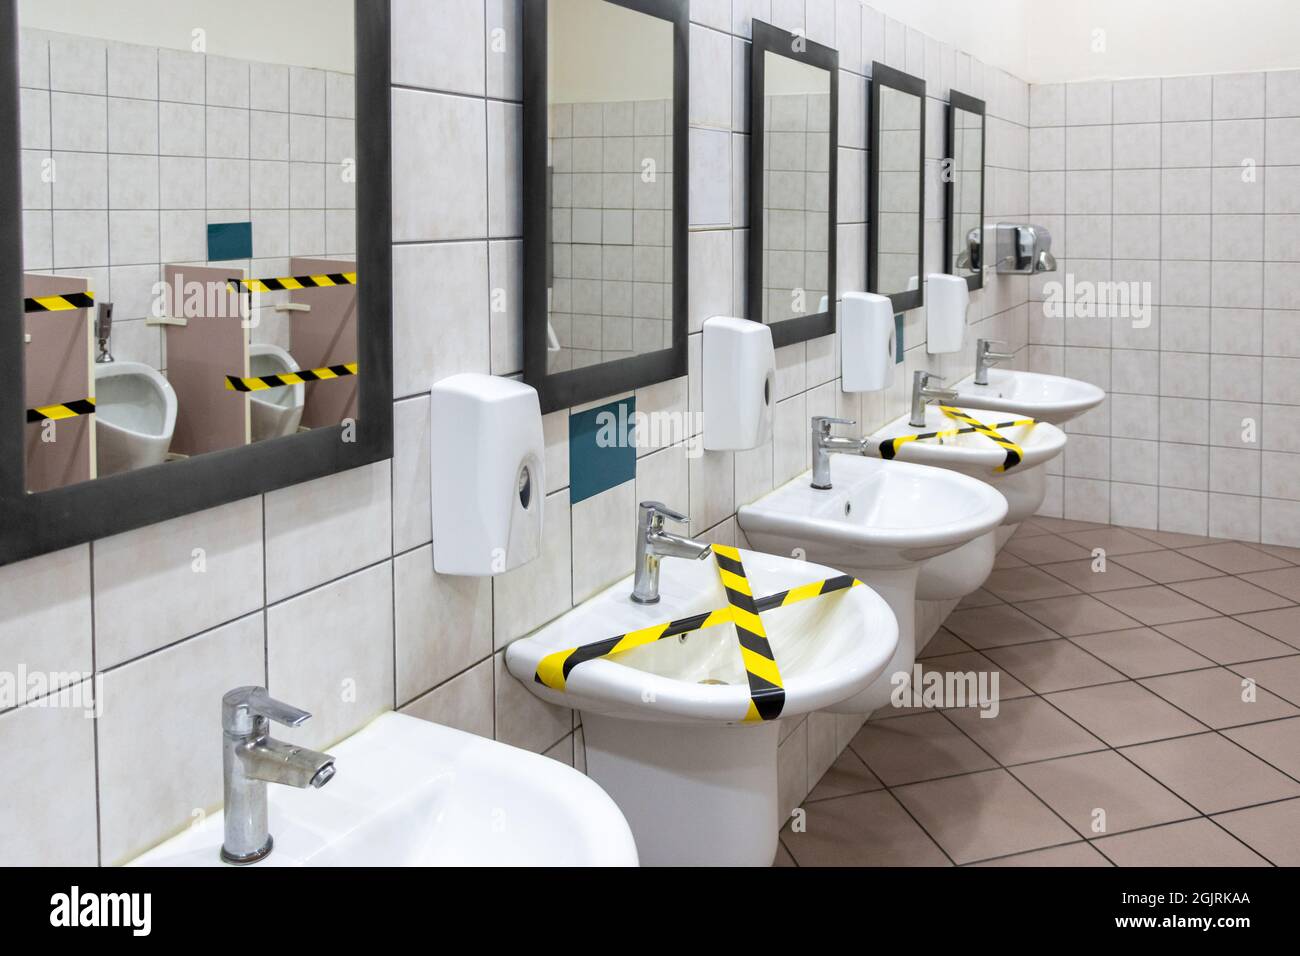 Mesures de vie sociale appliquées dans les toilettes publiques pour les mesures Covid-19. Distance sociale Banque D'Images